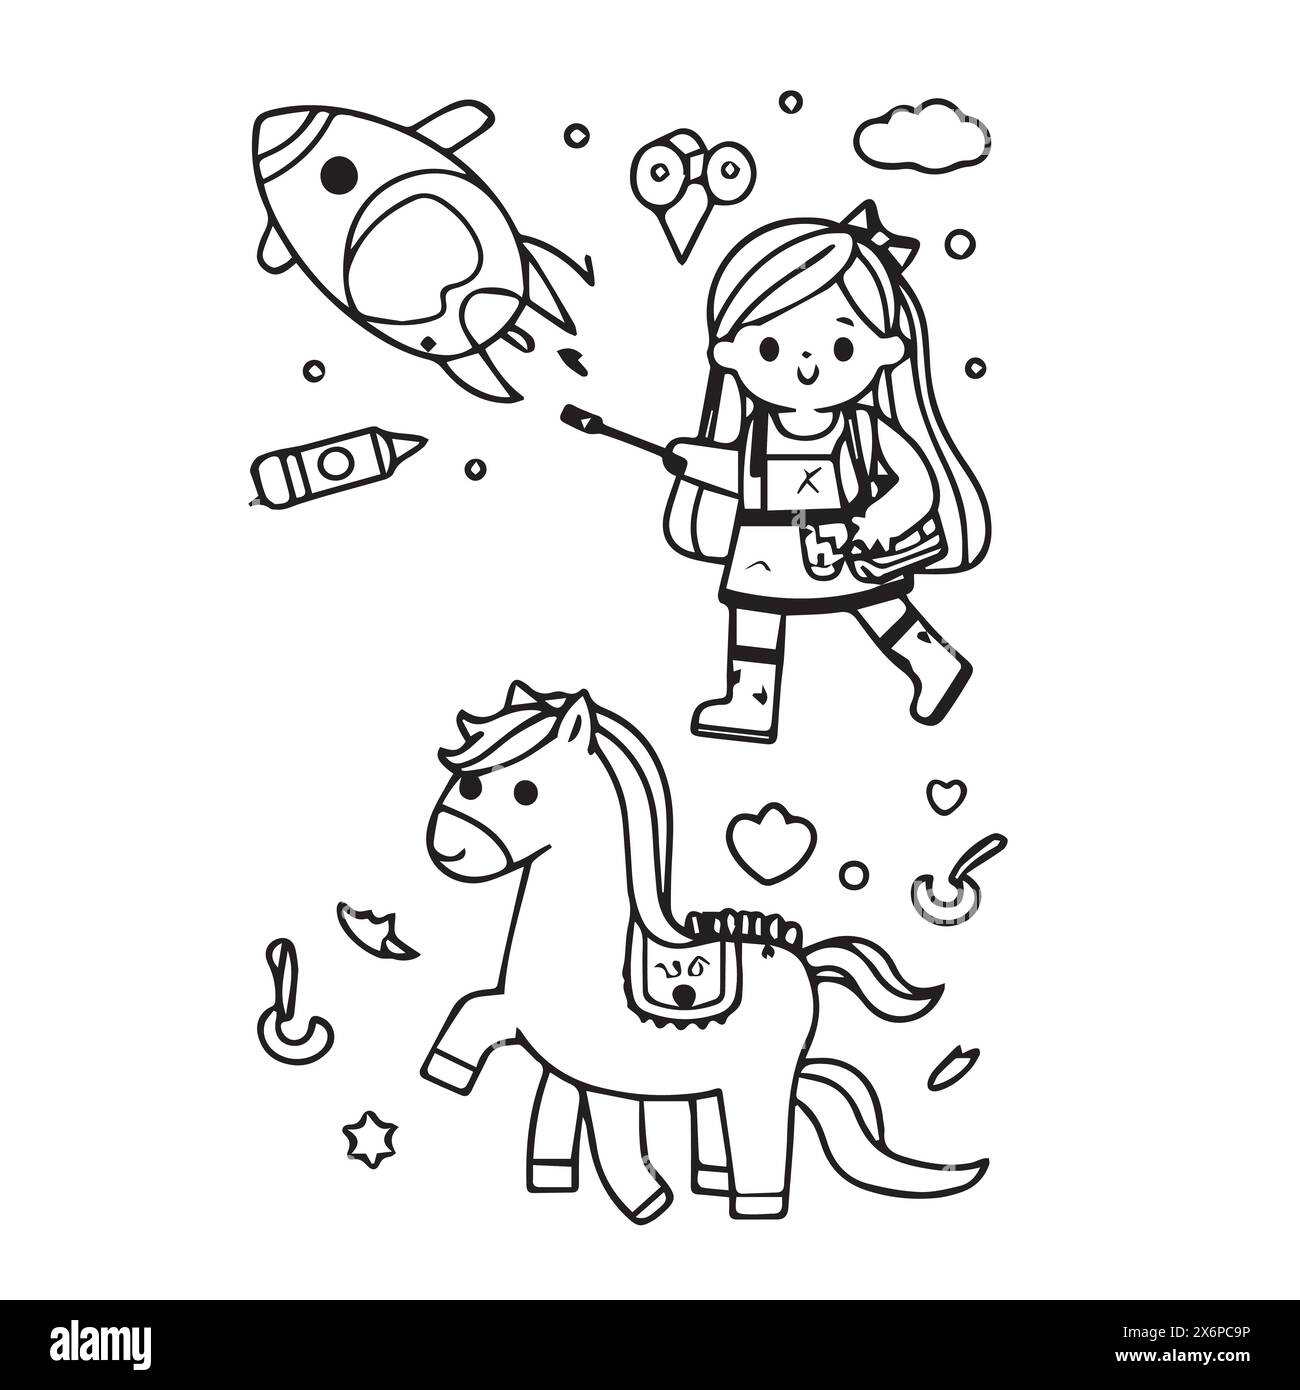 Skurrile Line Art Coloring Buch Vektor Designs für Kinder: Kreative und fesselnde Illustrationen, um die Fantasie zu begeistern Stock Vektor